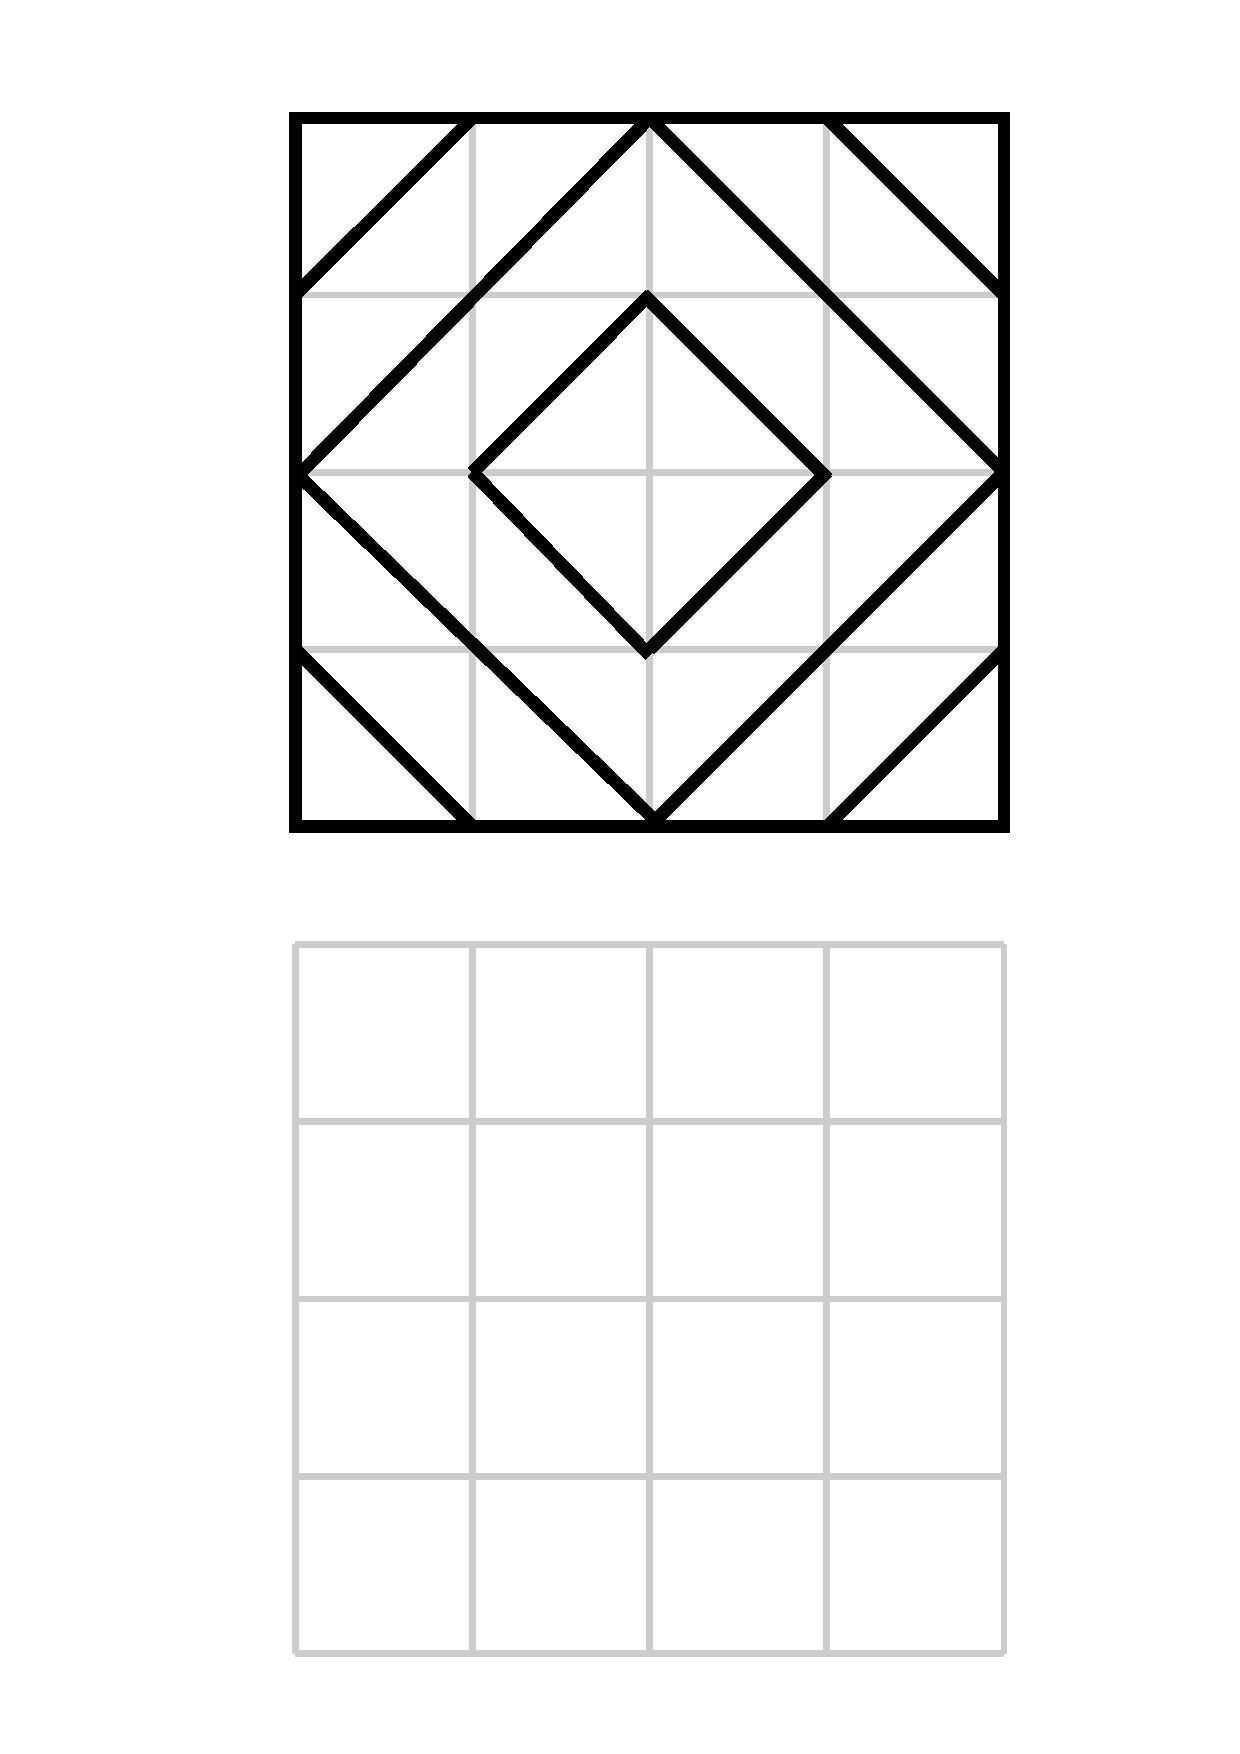 Weitere Muster Im 4 4 Raster Bildung Muster Geometrisches Mandala